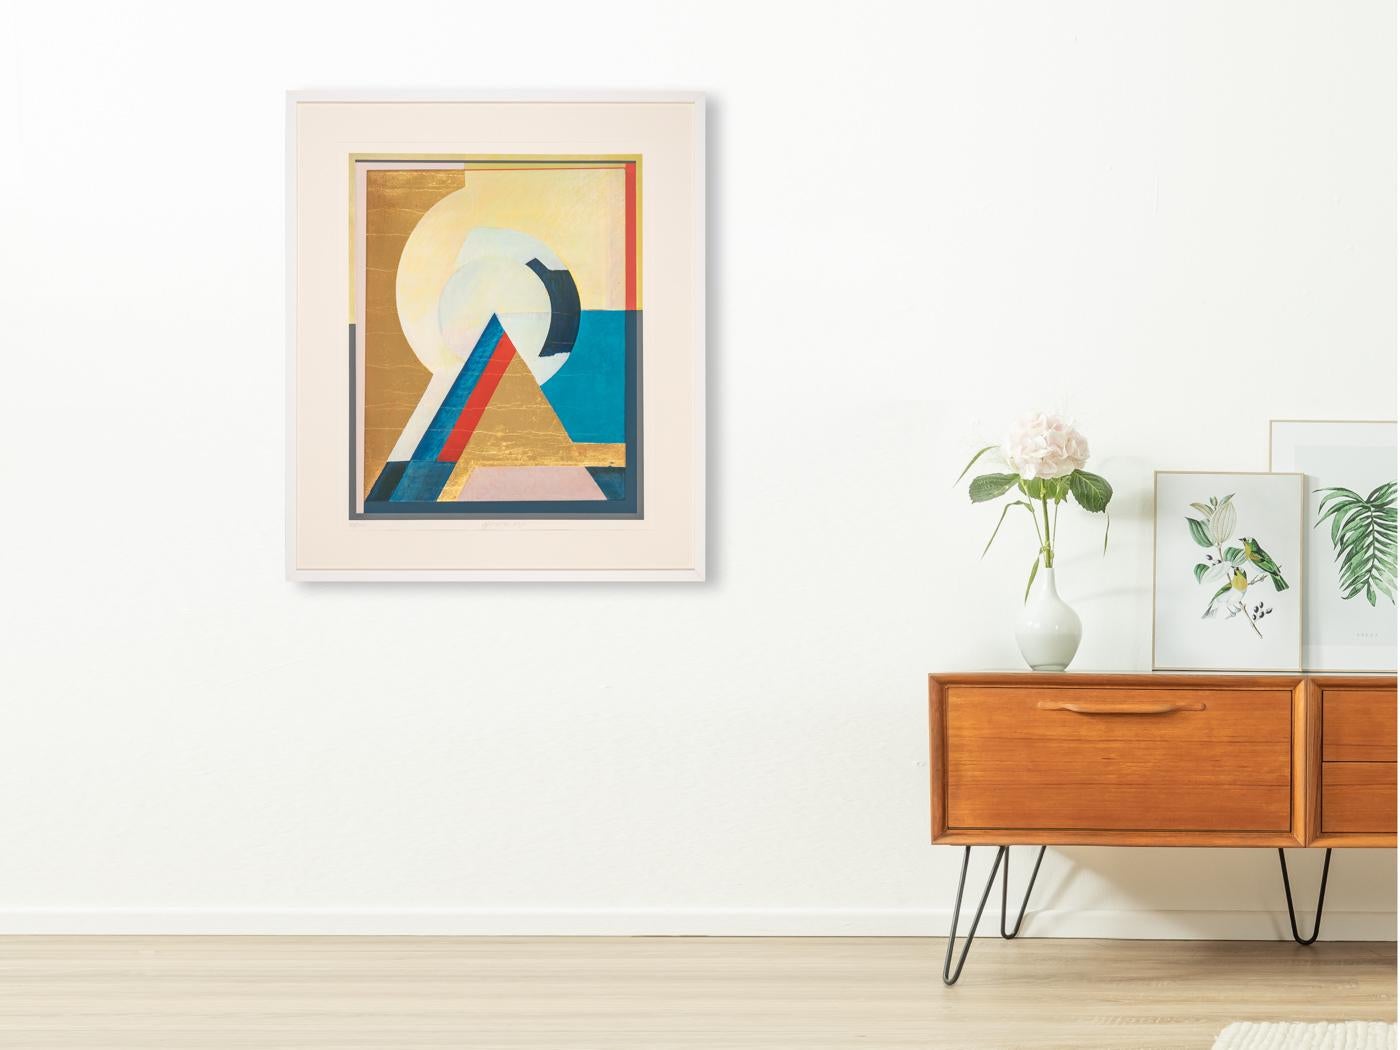 Otto Herbert HAJEK Pyramide mit einer Mischung aus glänzender und matter Oberfläche. Farbenfroher und abstrakter Offsetdruck auf dickem Papier aus dem Jahr 1992. Handsigniert und nummeriert (18/100). Aufhängefertig, gerahmt mit Passepartout in einem